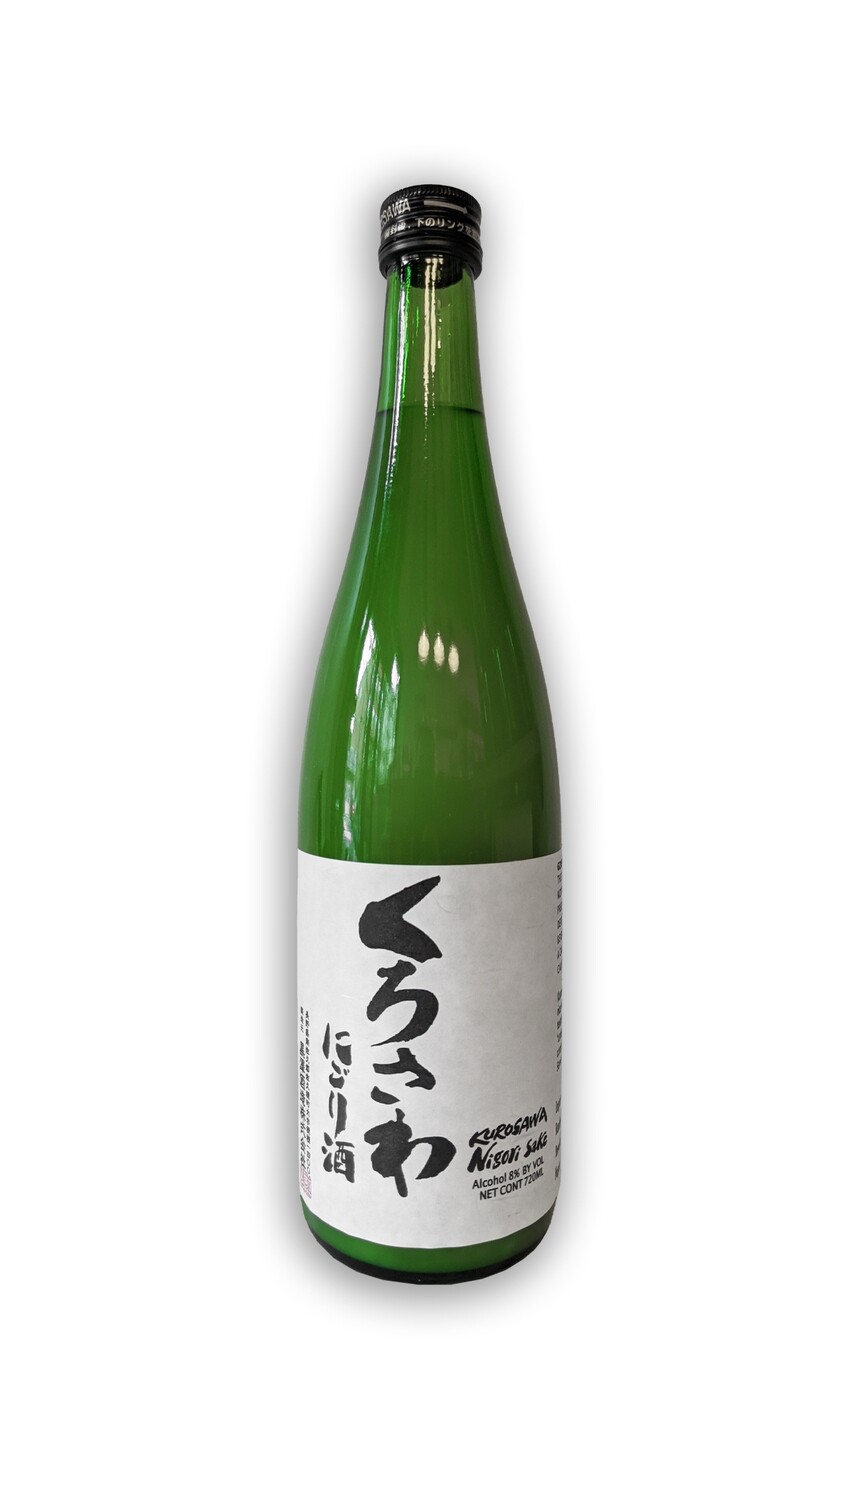 Kurosawa Nigori Sake 750ml